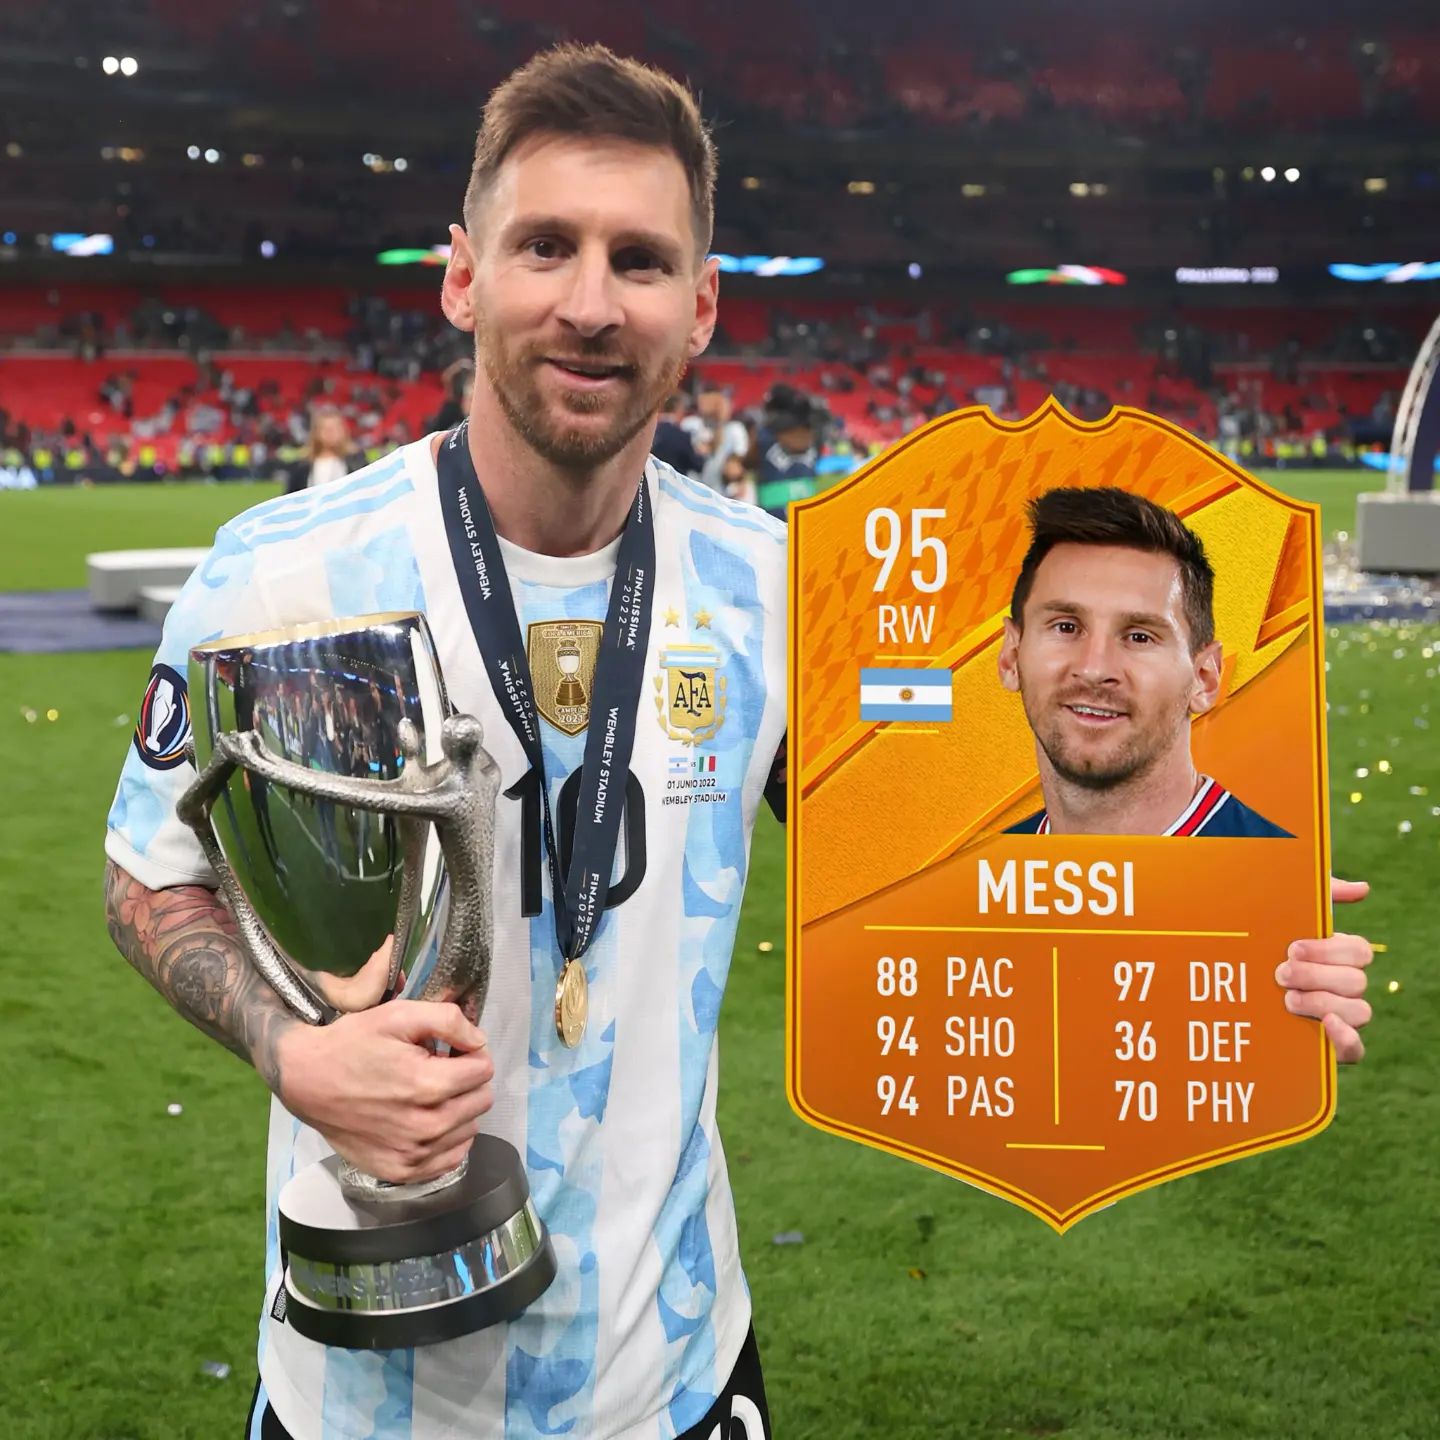 Finalissima 2022 💪Lionel Messi Man of the match 💯👌#finalissima #finalissima2022 #motm #messi #argentina #italy #football #psg #lionelmessi #fifa #fifa22 #easportsfifa22 #ultimateteam #futpark